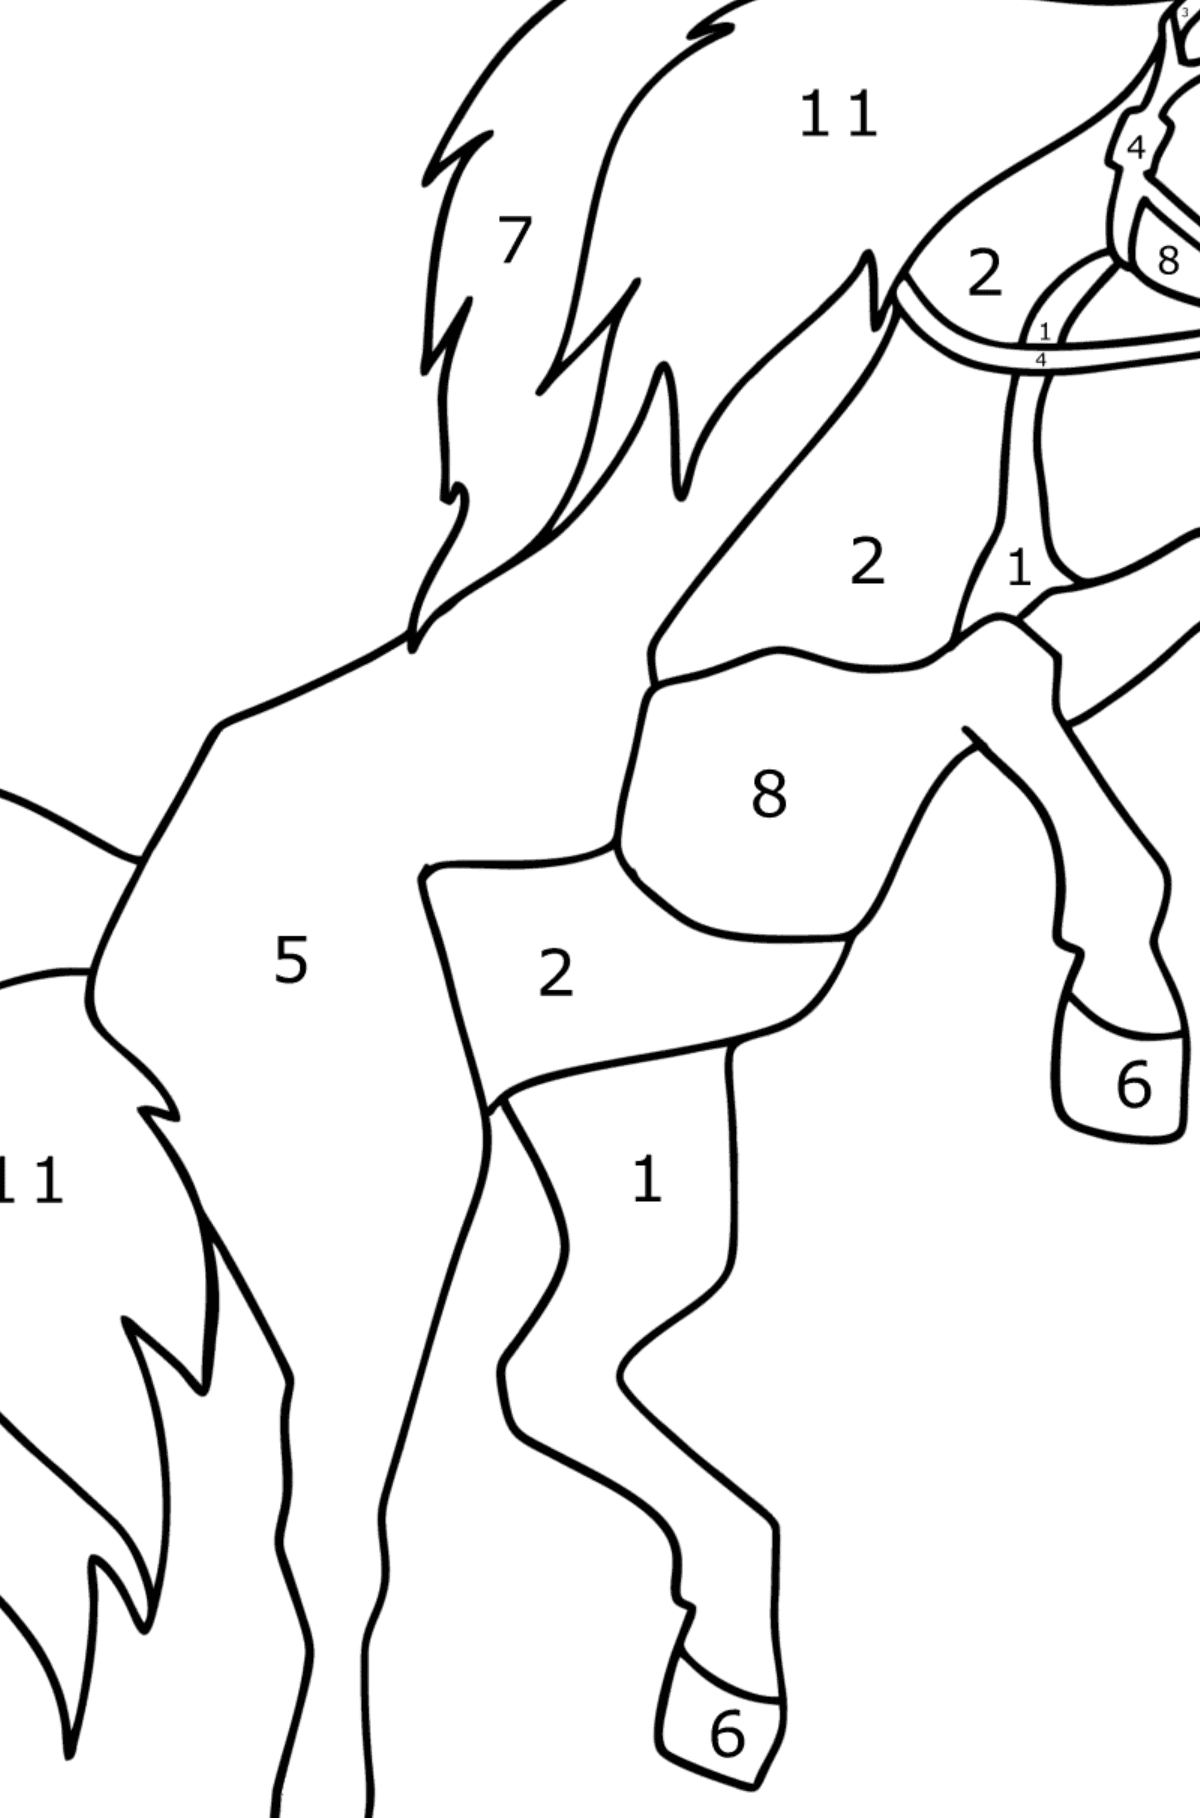 Kleurplaat Galopperend paard - Kleuren op nummer voor kinderen